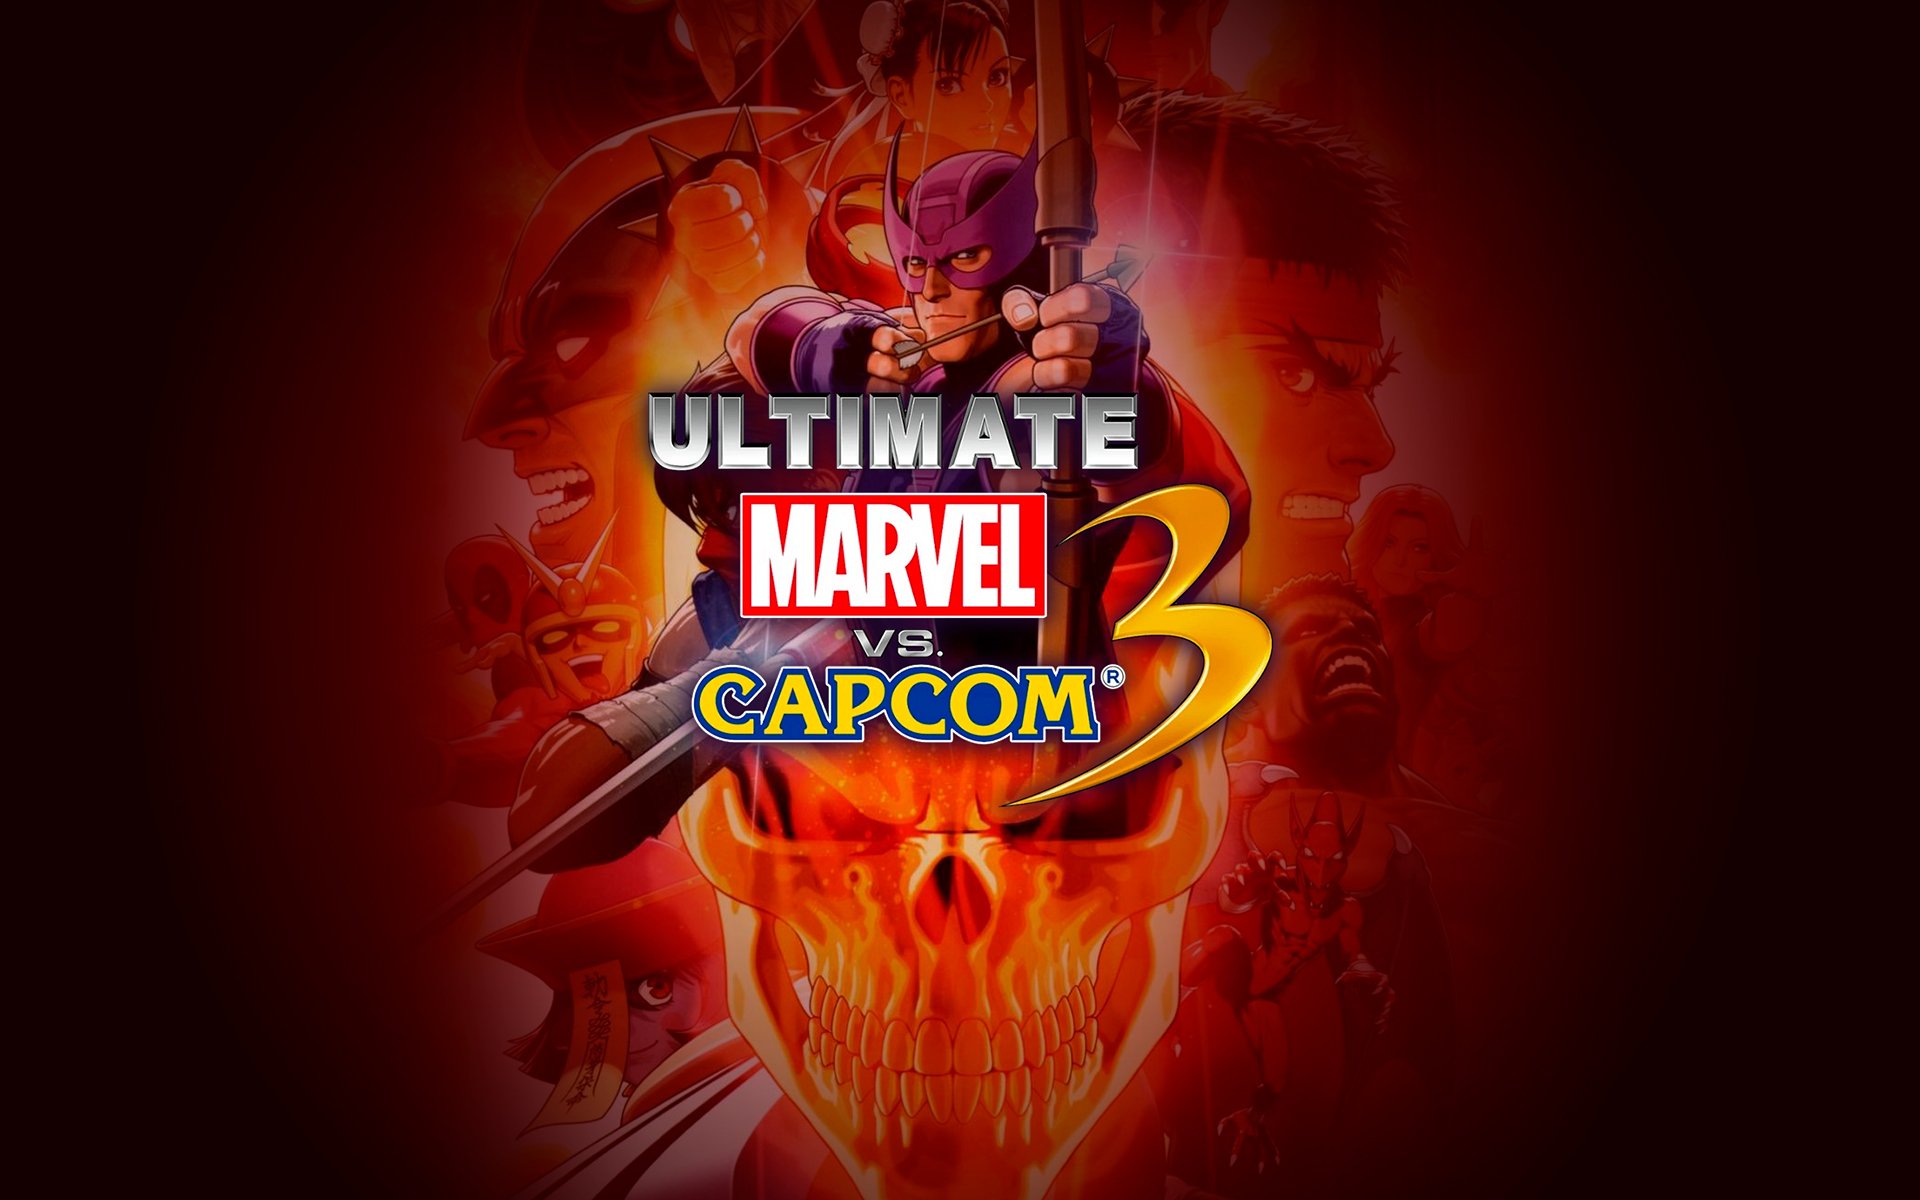 Compre Marvel vs. Capcom a partir de R$ 54.99